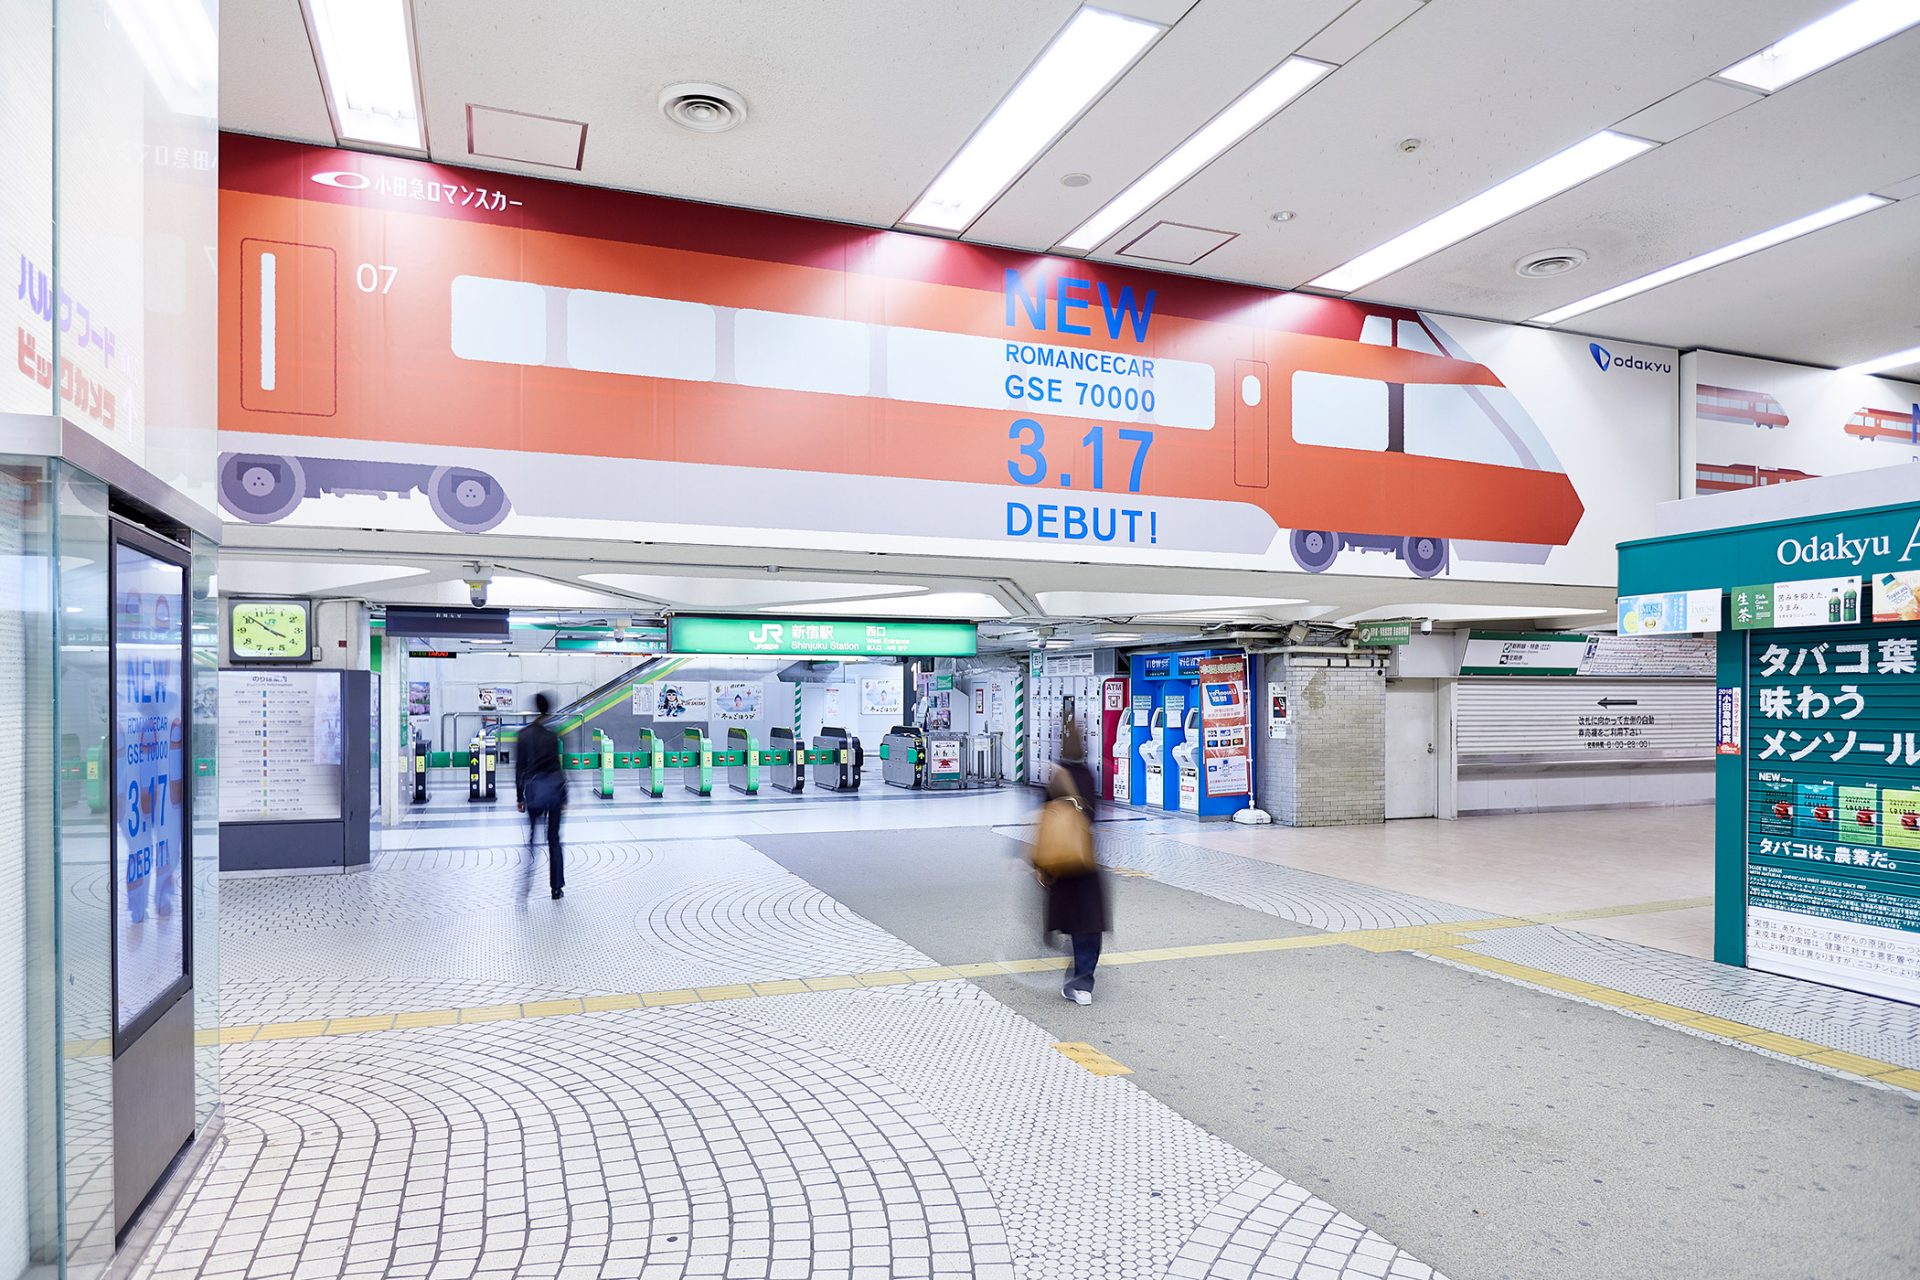 小田急电铁新车上线新宿站站体包装广告 Egda